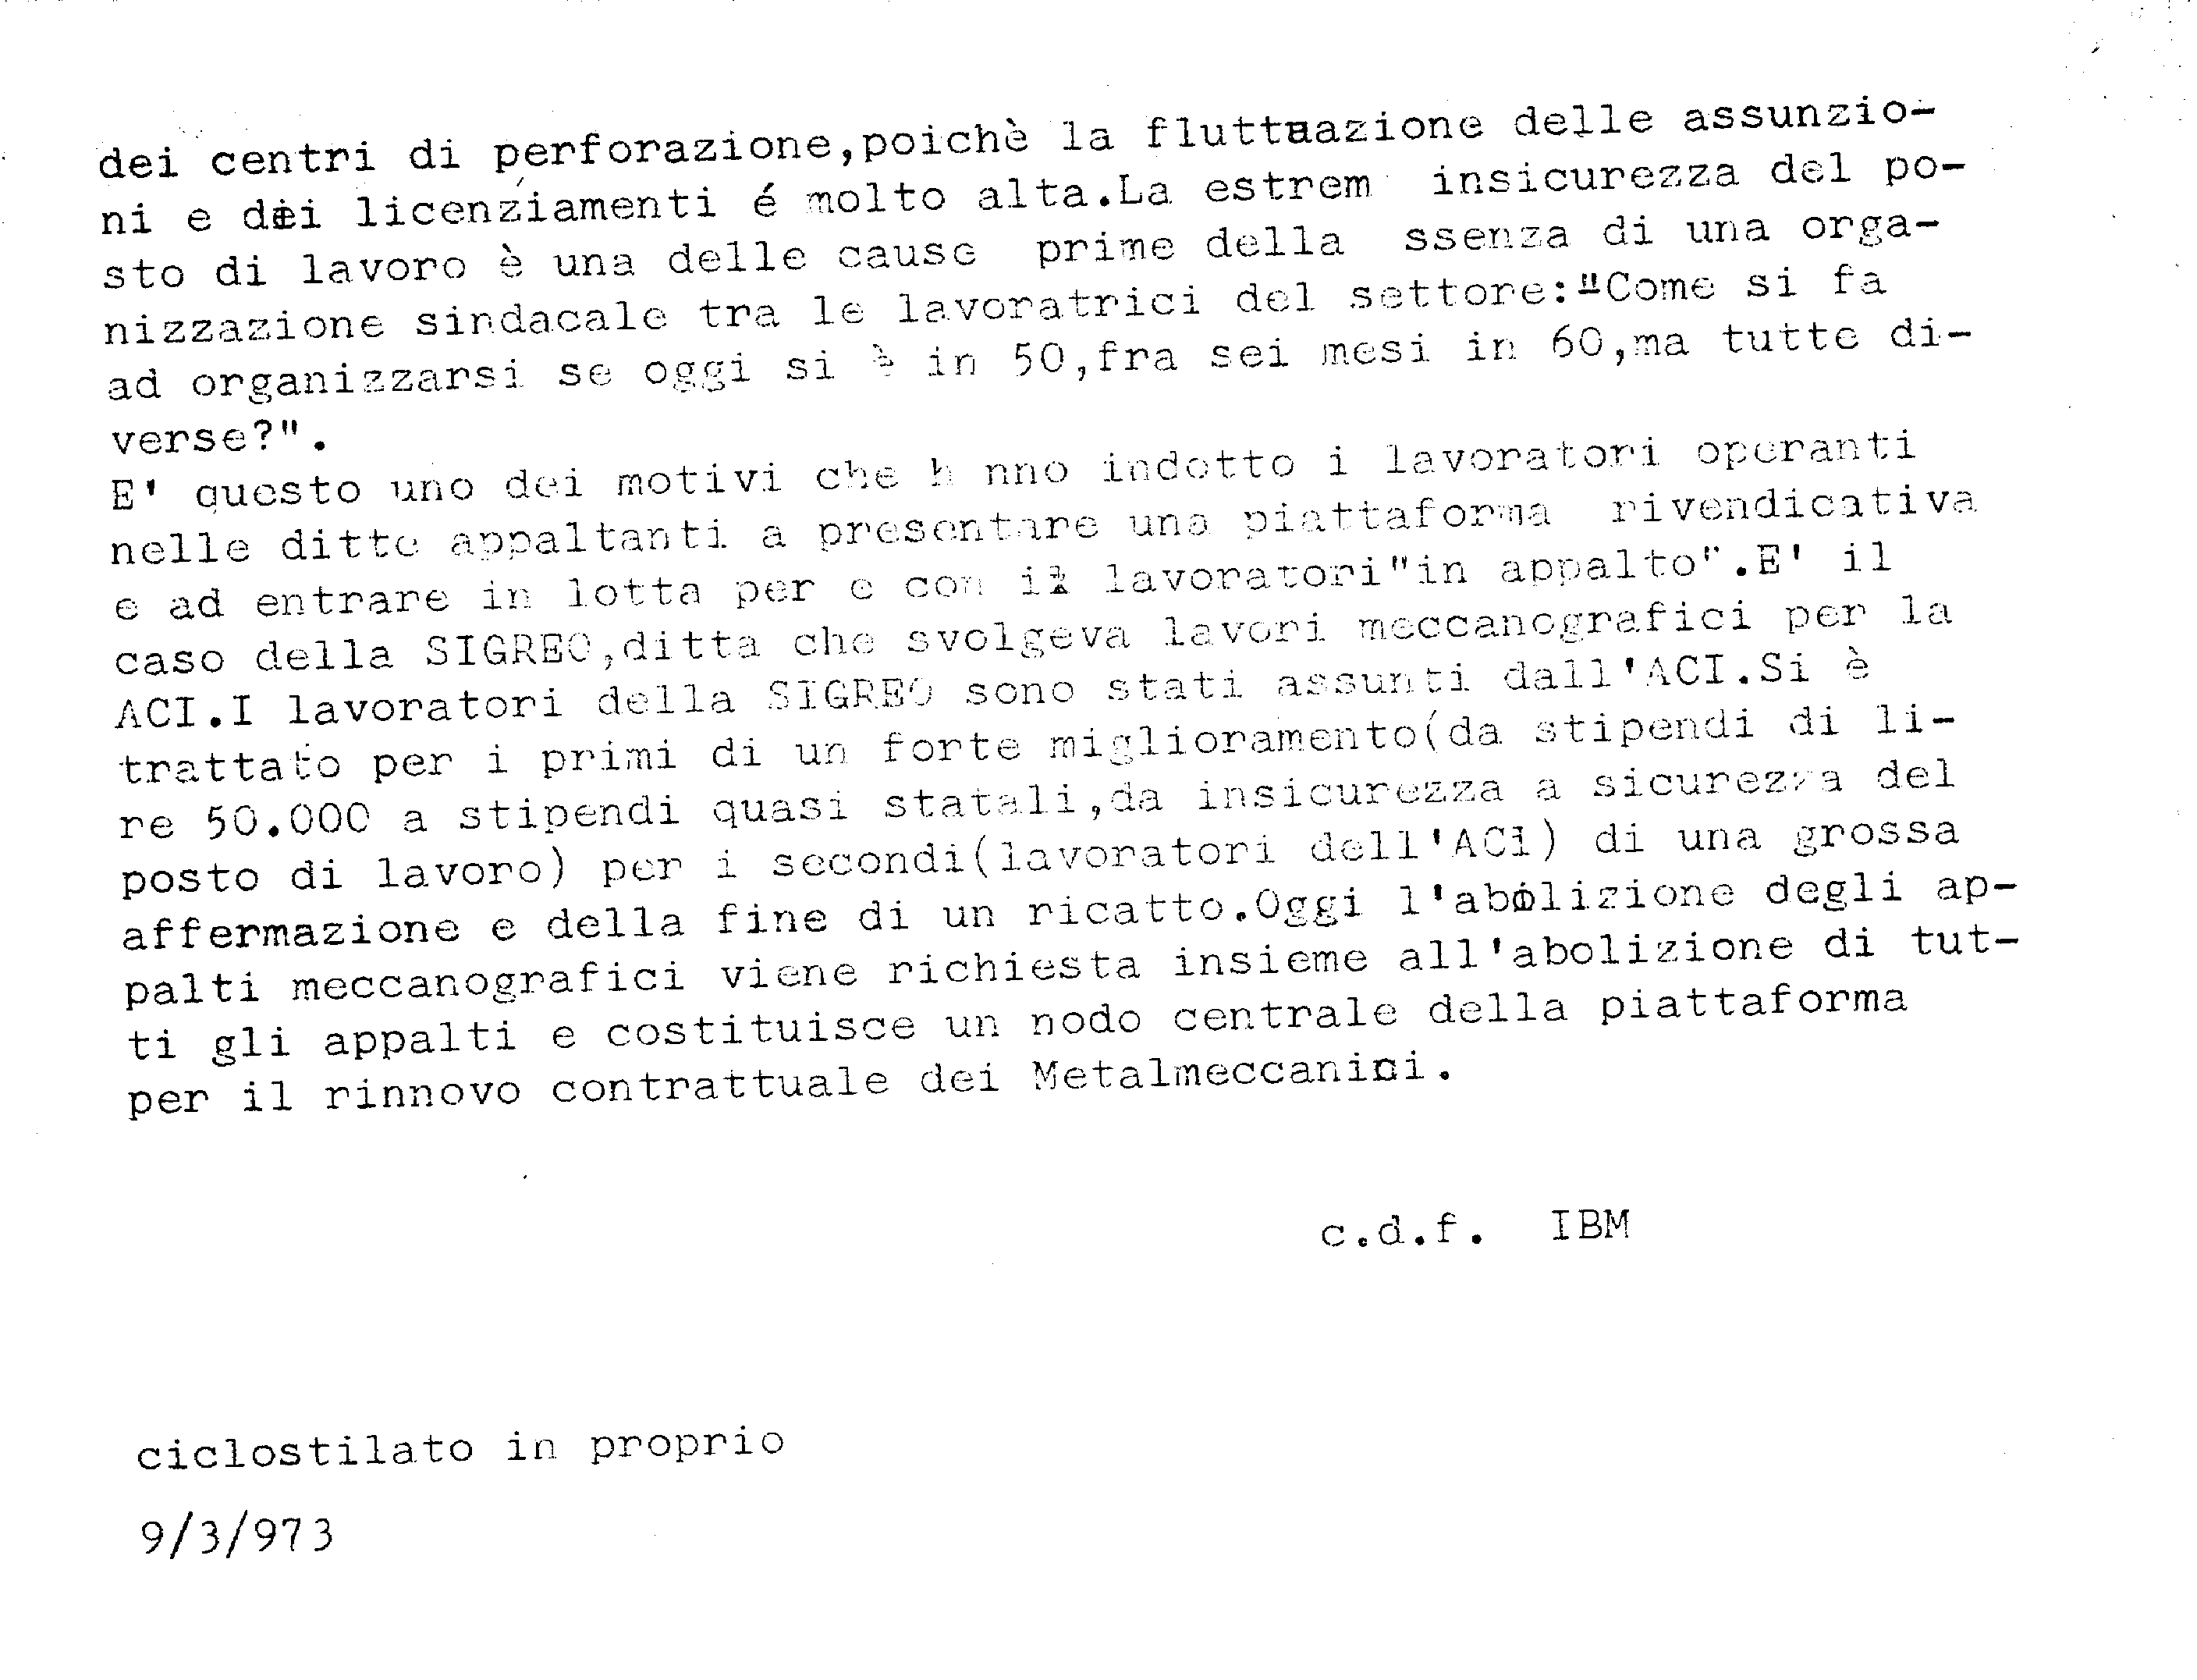 Appalti in IBM 09/03/1973